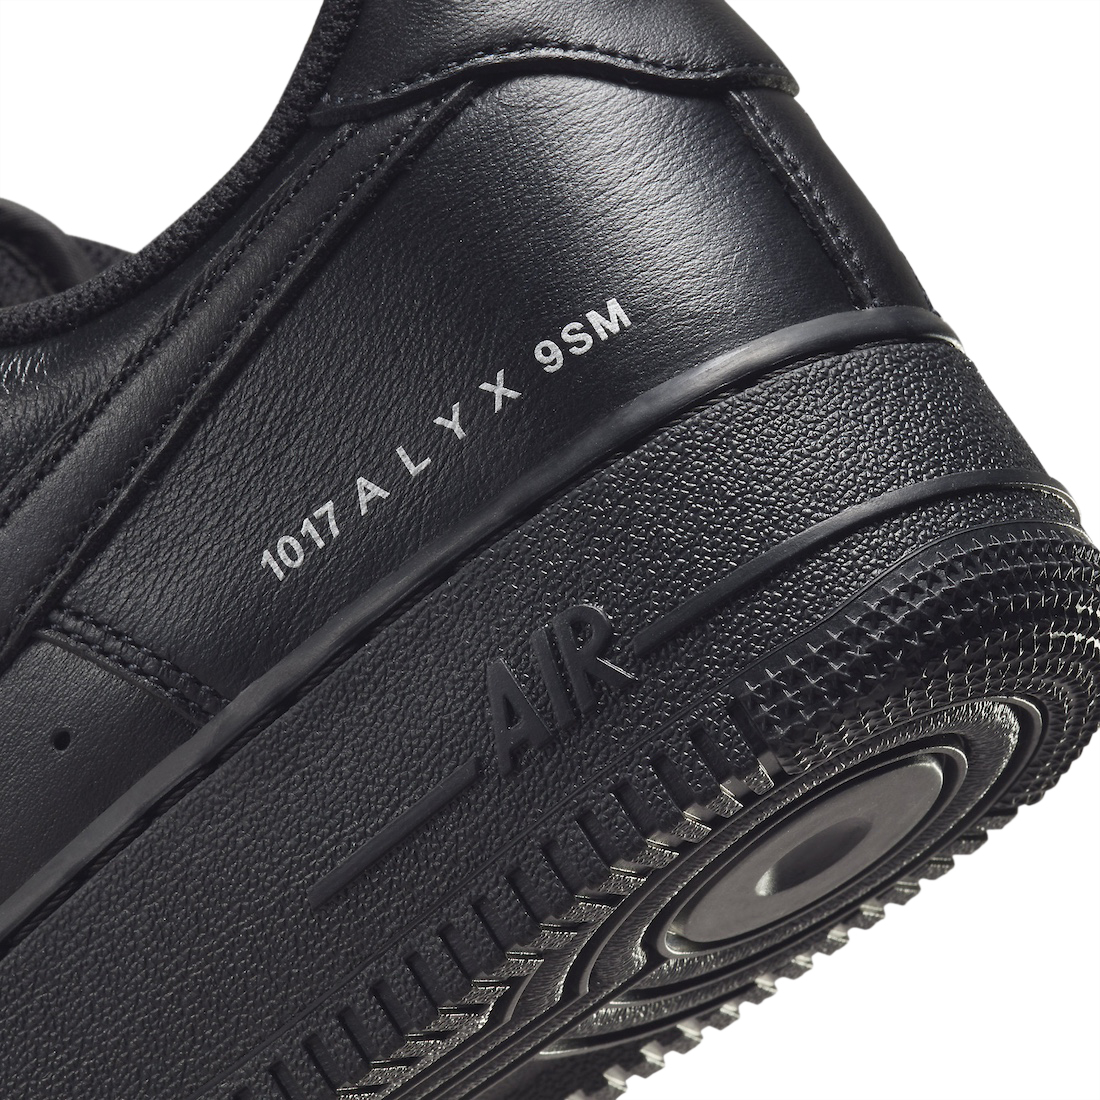 BUY ALYX X Nike Air Force 1 Low Black | Kixify Marketplace